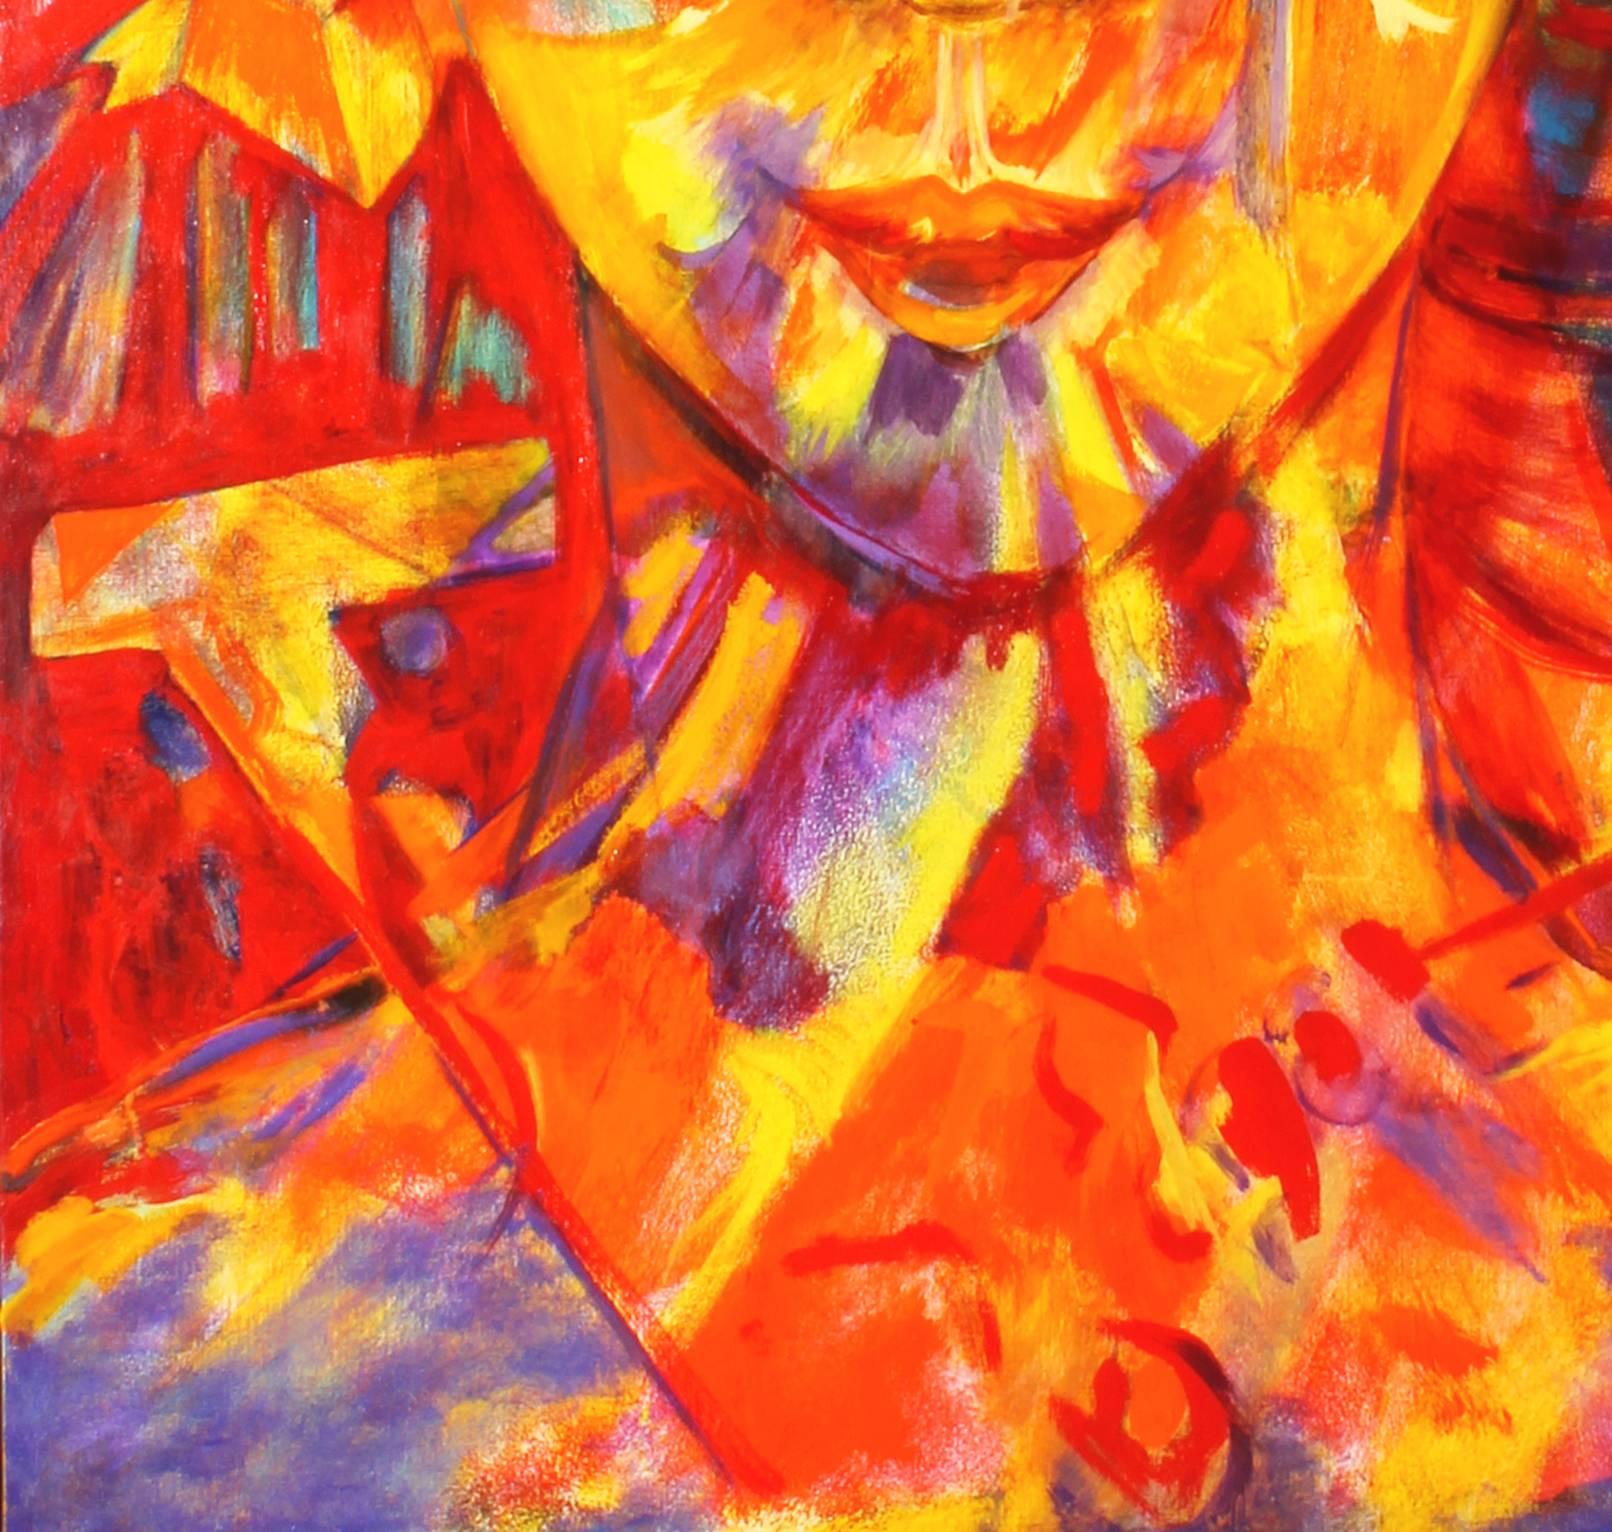 My Best Friend ist ein Gemälde von Evelyne Ballestra, einer zeitgenössischen französischen Künstlerin. Dieses orangefarbene und gelbe expressionistische Gemälde ist die Darstellung des anderen Ichs des Künstlers, einer unveränderlichen Präsenz, die